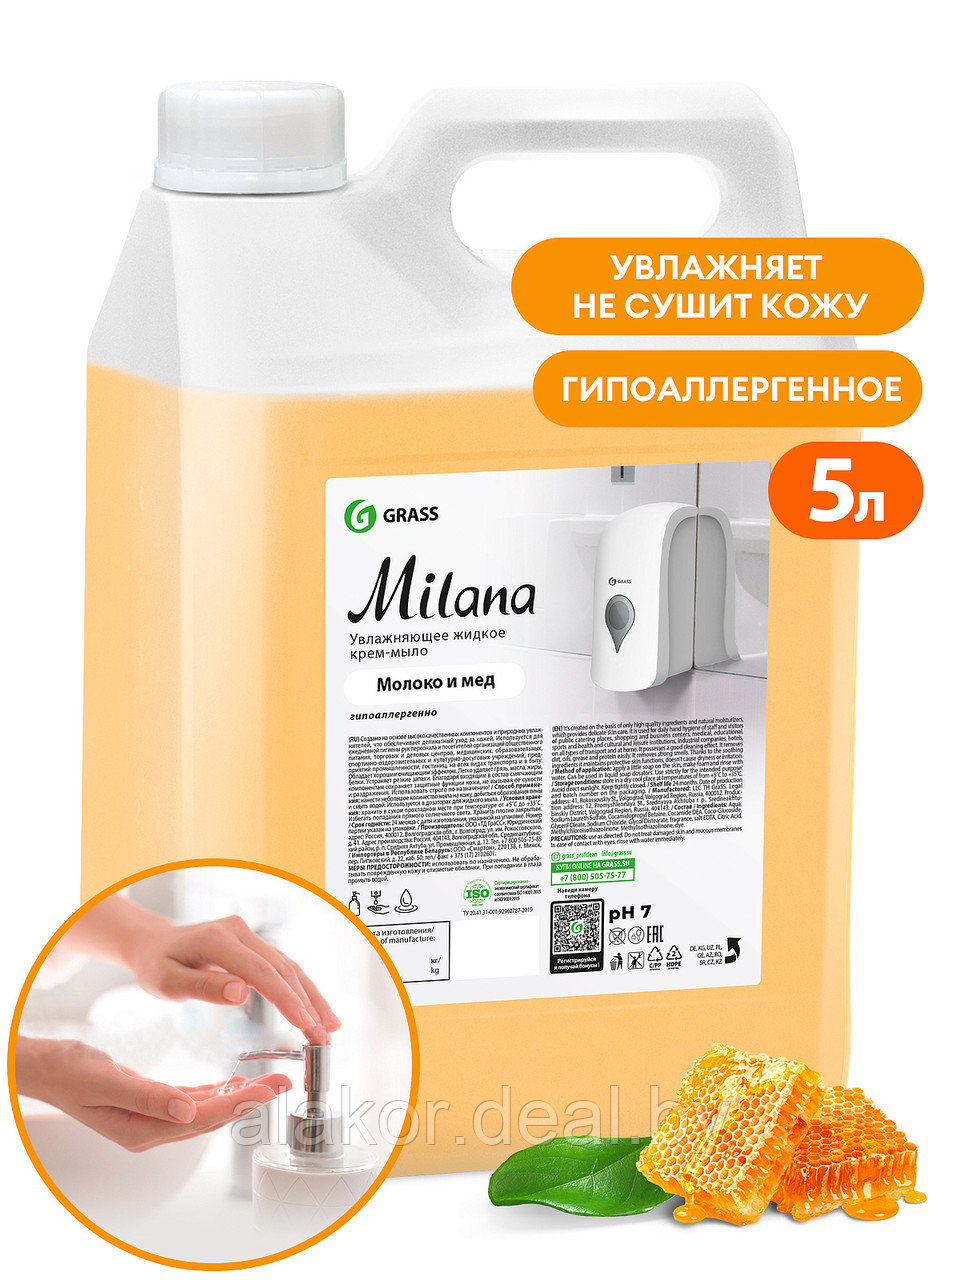 Мыло жидкое Milana, 5000гр., молоко и мед